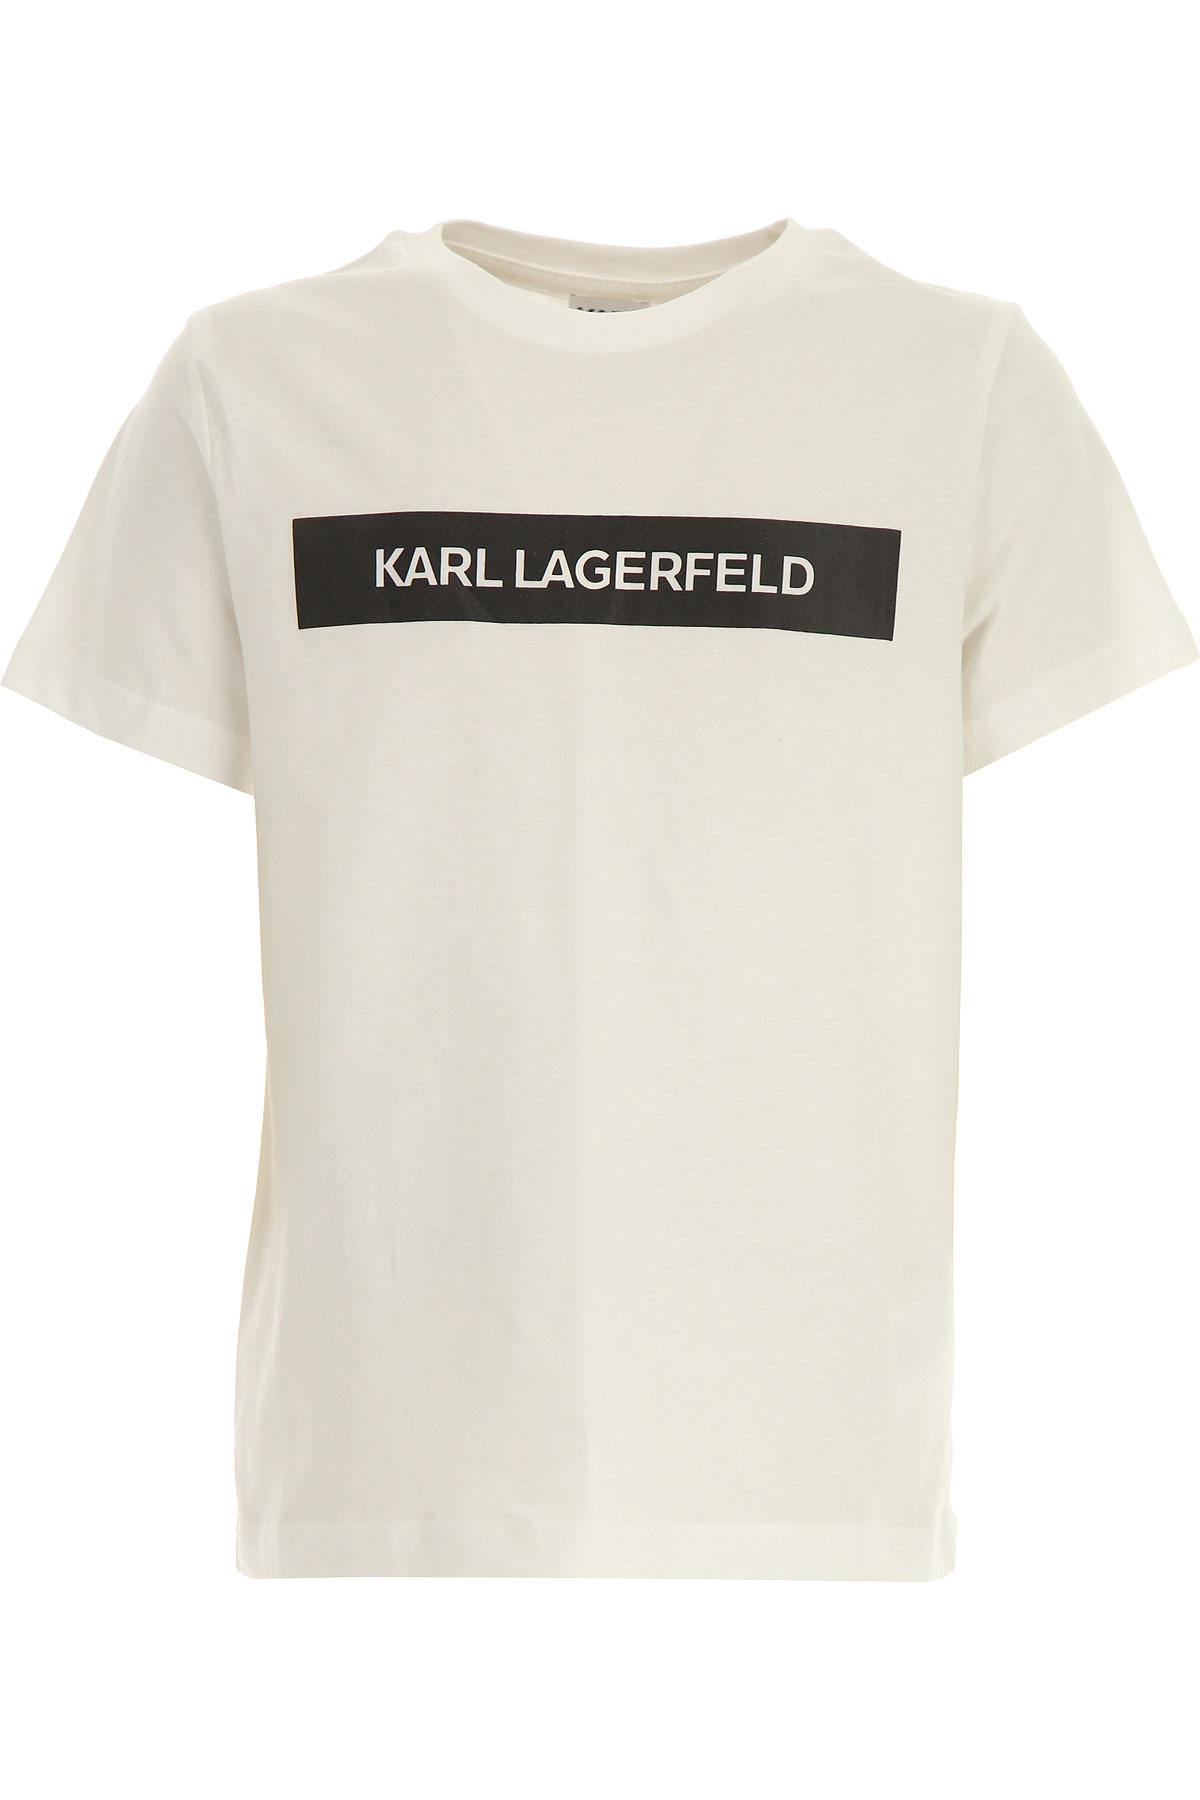 Karl Lagerfeld Kinder T-Shirt für Jungen Günstig im Sale, Weiss, Baumwolle, 2017, 10Y 12Y 14Y 8Y